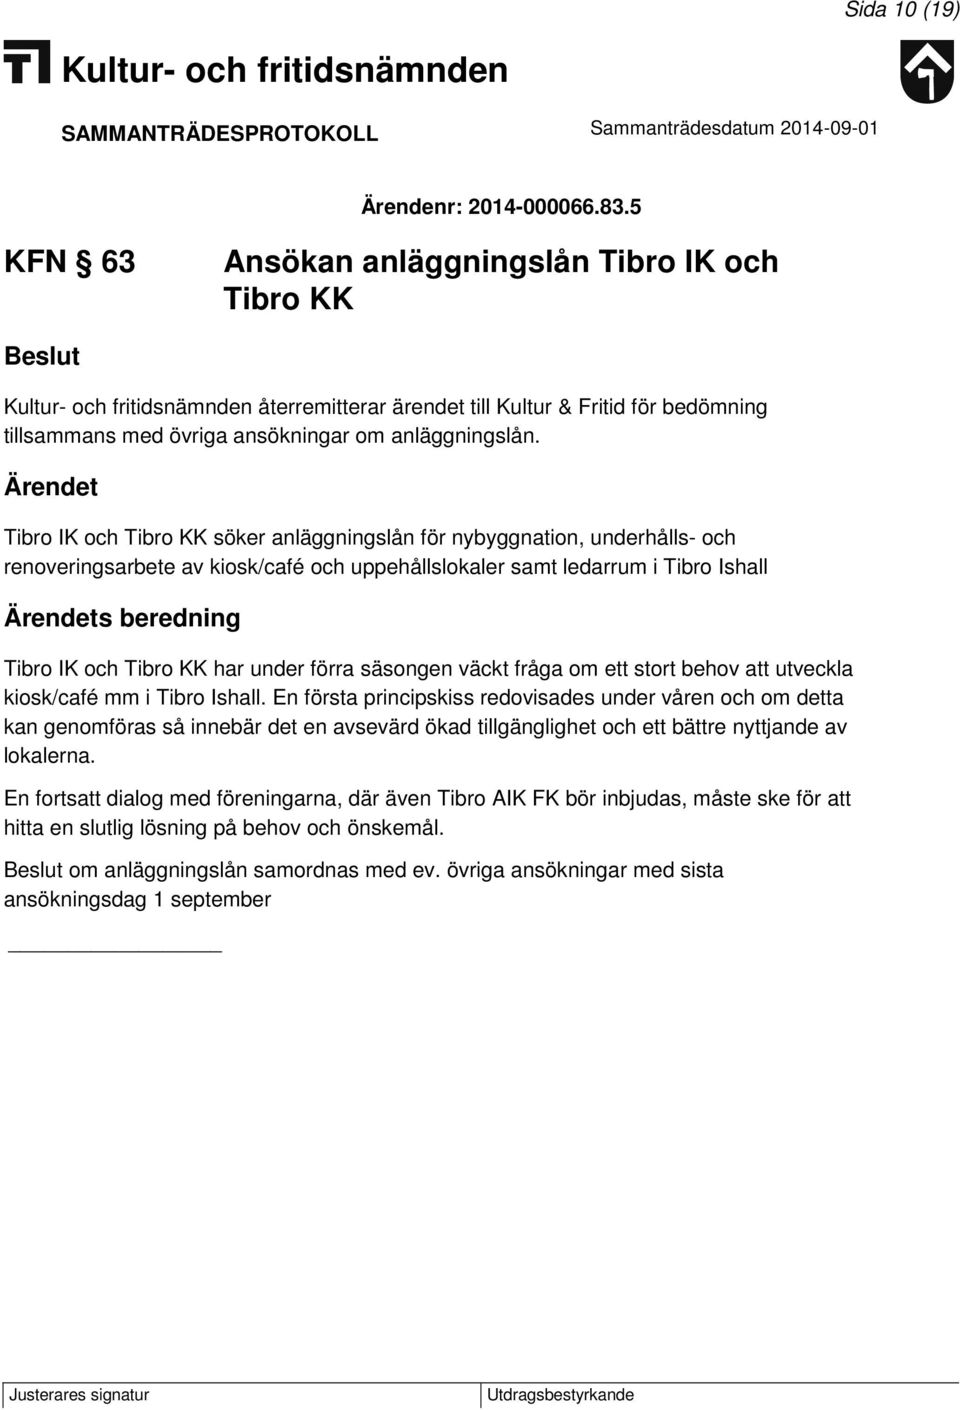 Tibro IK och Tibro KK söker anläggningslån för nybyggnation, underhålls- och renoveringsarbete av kiosk/café och uppehållslokaler samt ledarrum i Tibro Ishall s beredning Tibro IK och Tibro KK har